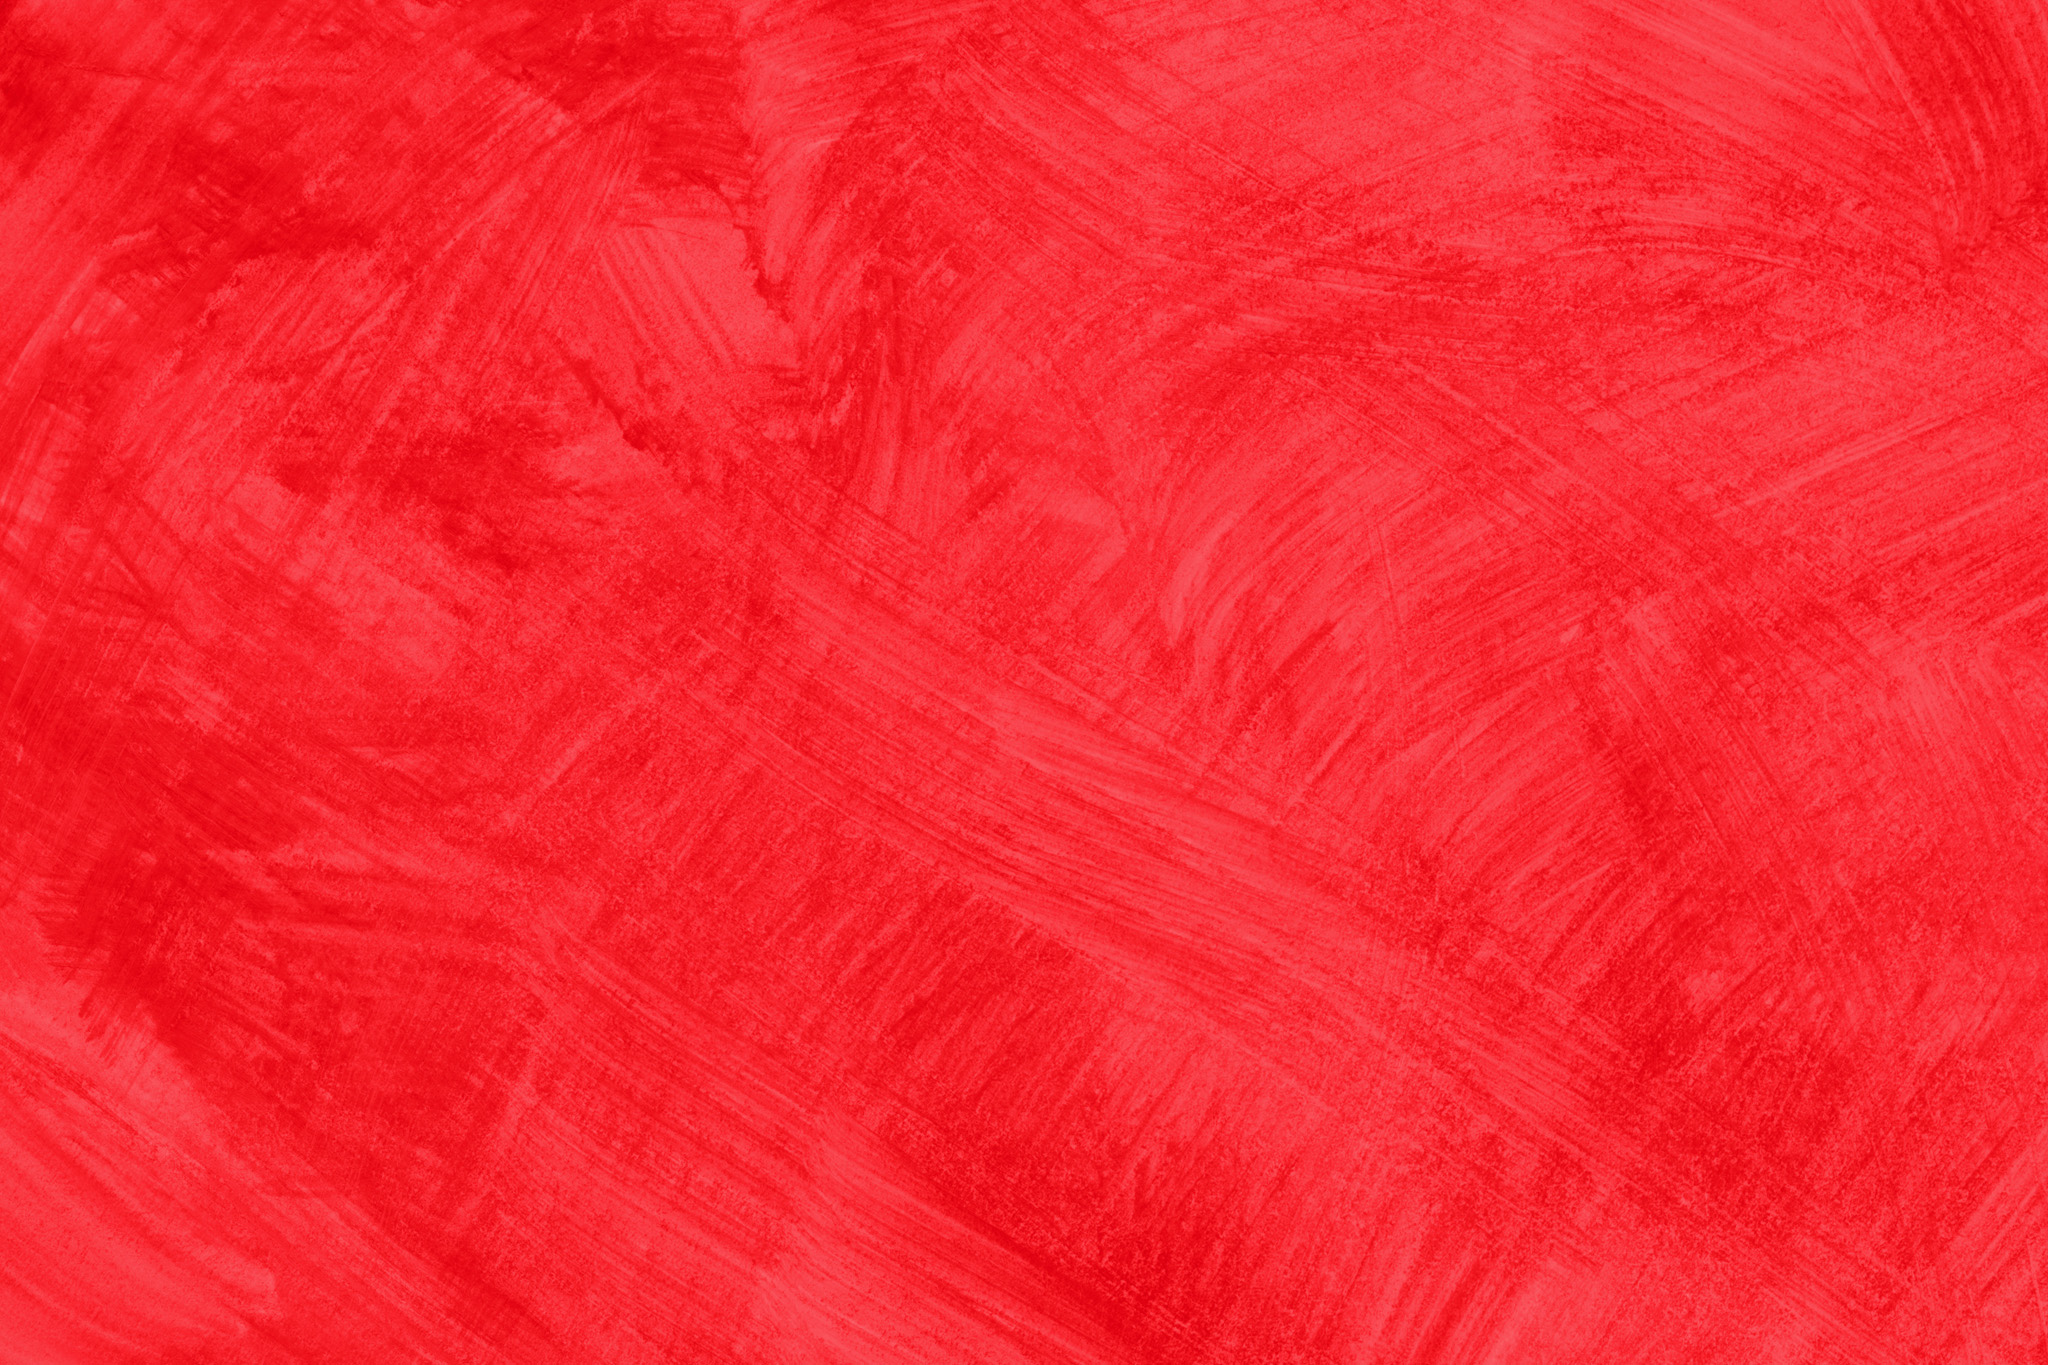 無地の赤色のかっこいい壁紙 の画像素材を無料ダウンロード 1 フリー素材 Beiz Images